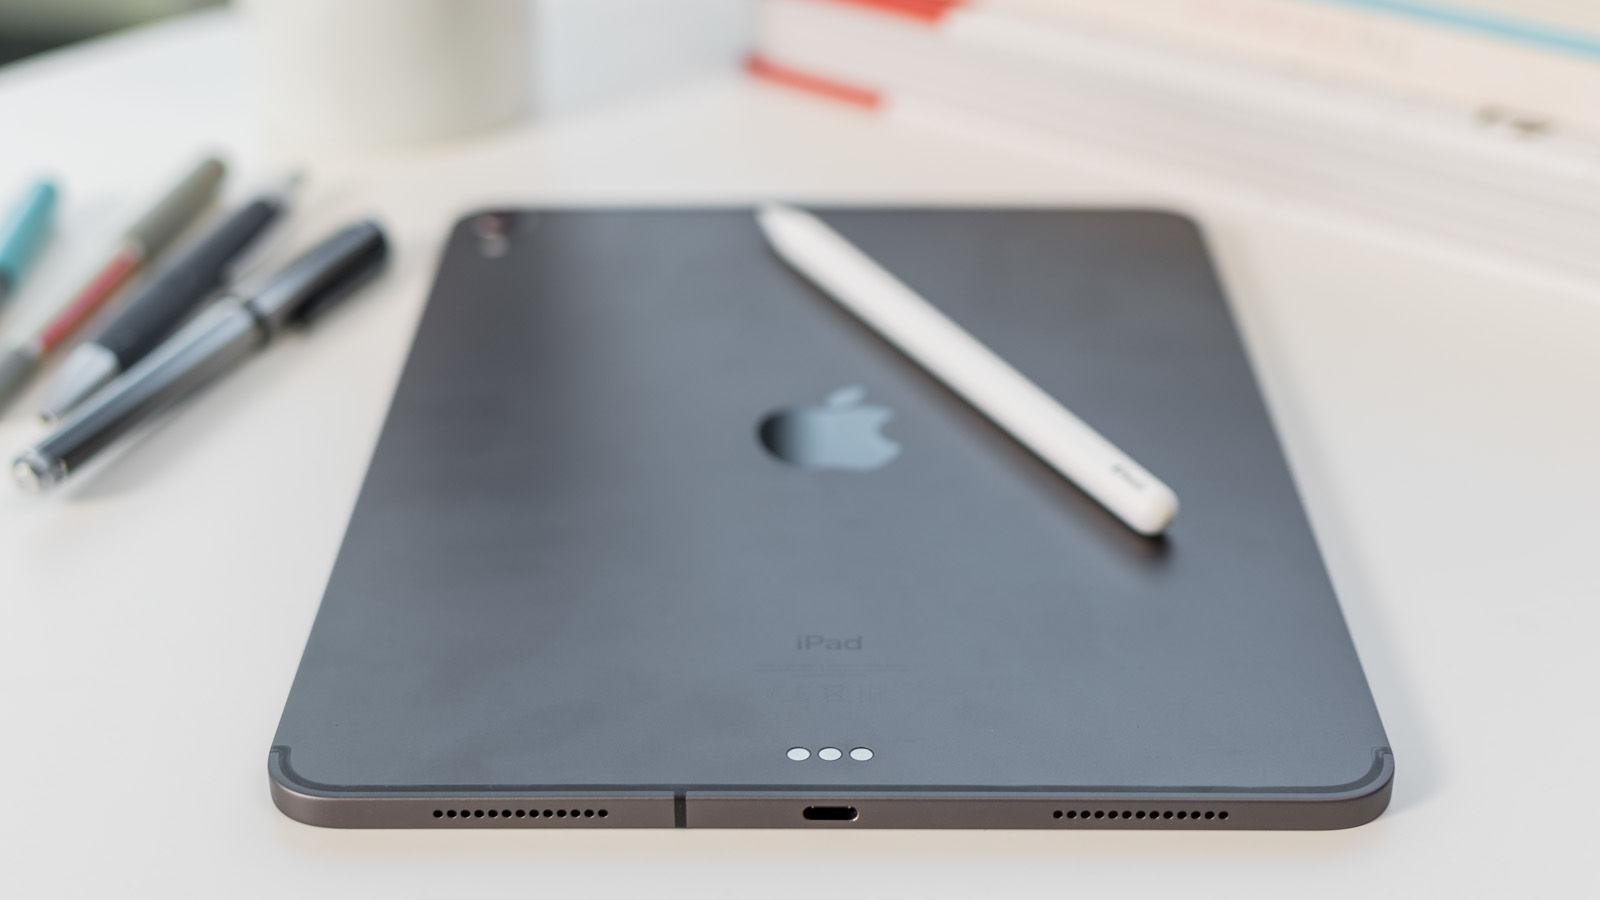 Lançado em 2018, o iPad Pro chegou ao mercado com a porta USB-C.